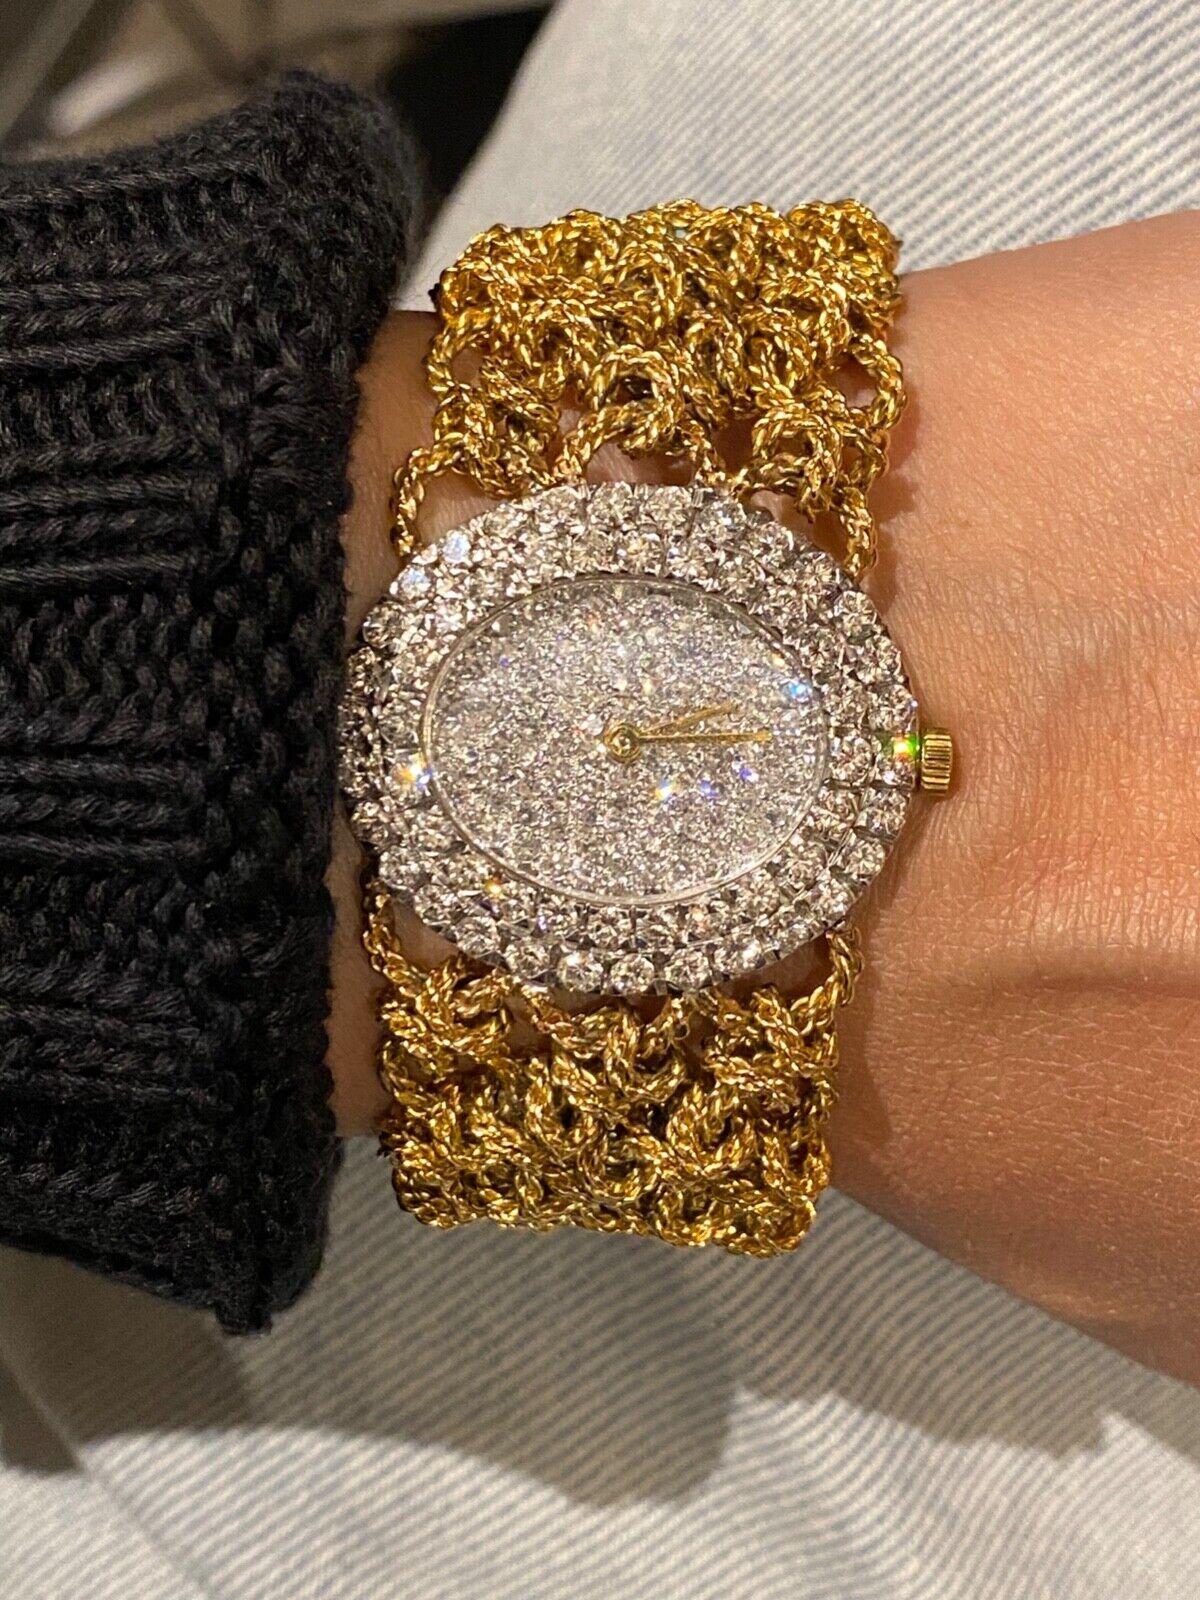 Retro Bueche-Girod 18k Gold & 5.00 Diamond Knitted Bracelet Dress Watch, Ref Y 9801